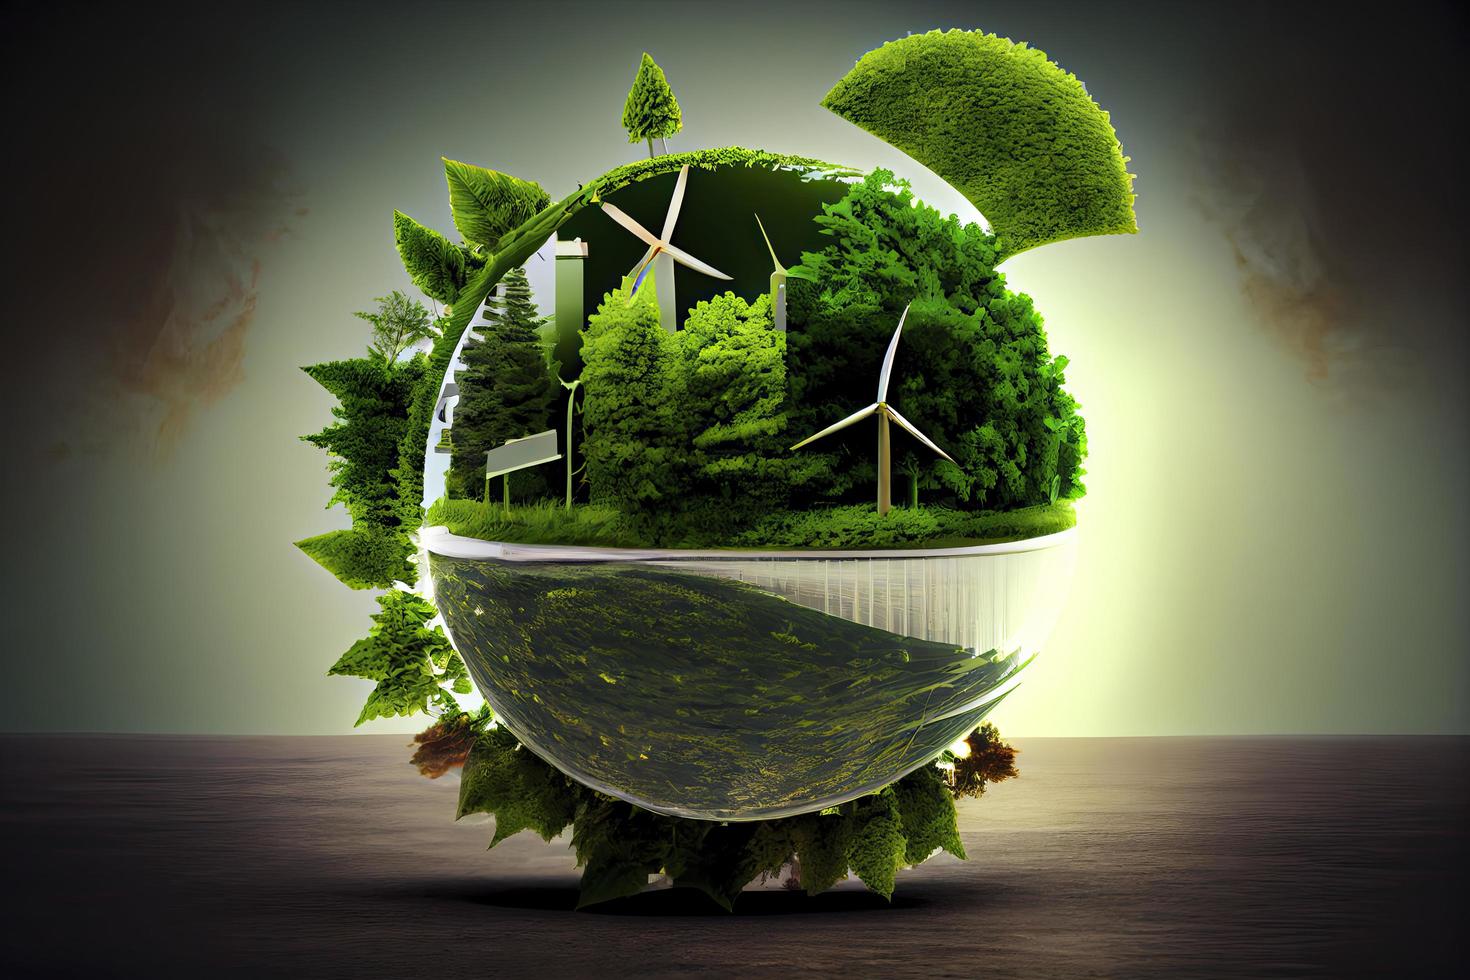 groen energie, duurzame industrie. milieu, sociaal, en zakelijke bestuur concept foto